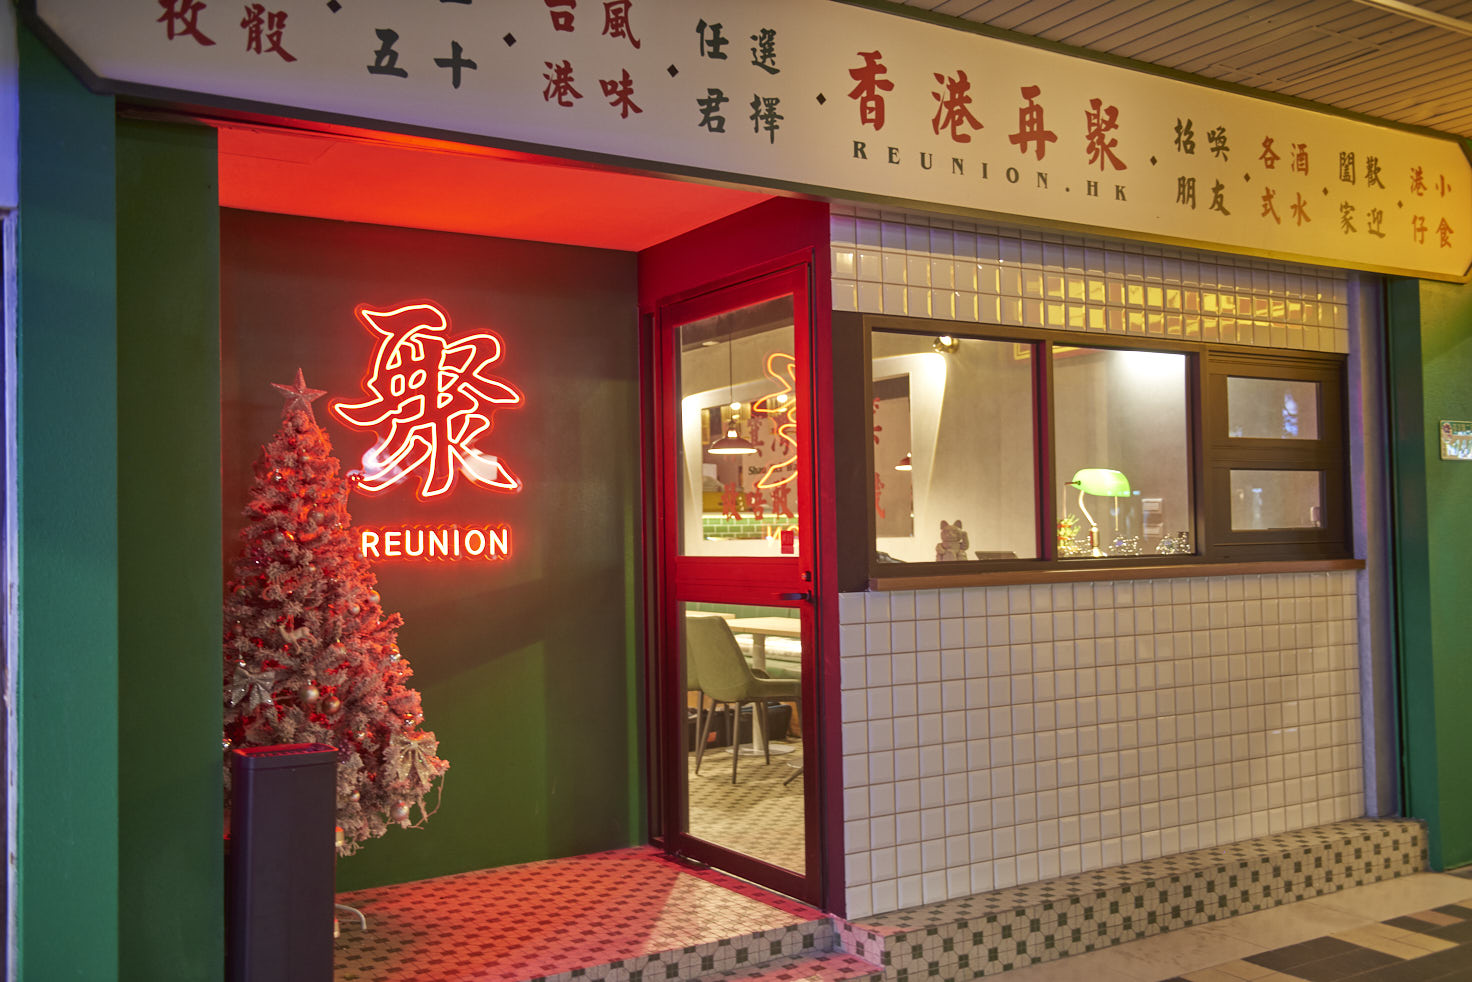 在香港當地營業逾 10 年之久的「壹碗壹碟」，這次選在台灣打造「再聚」港式餐酒館